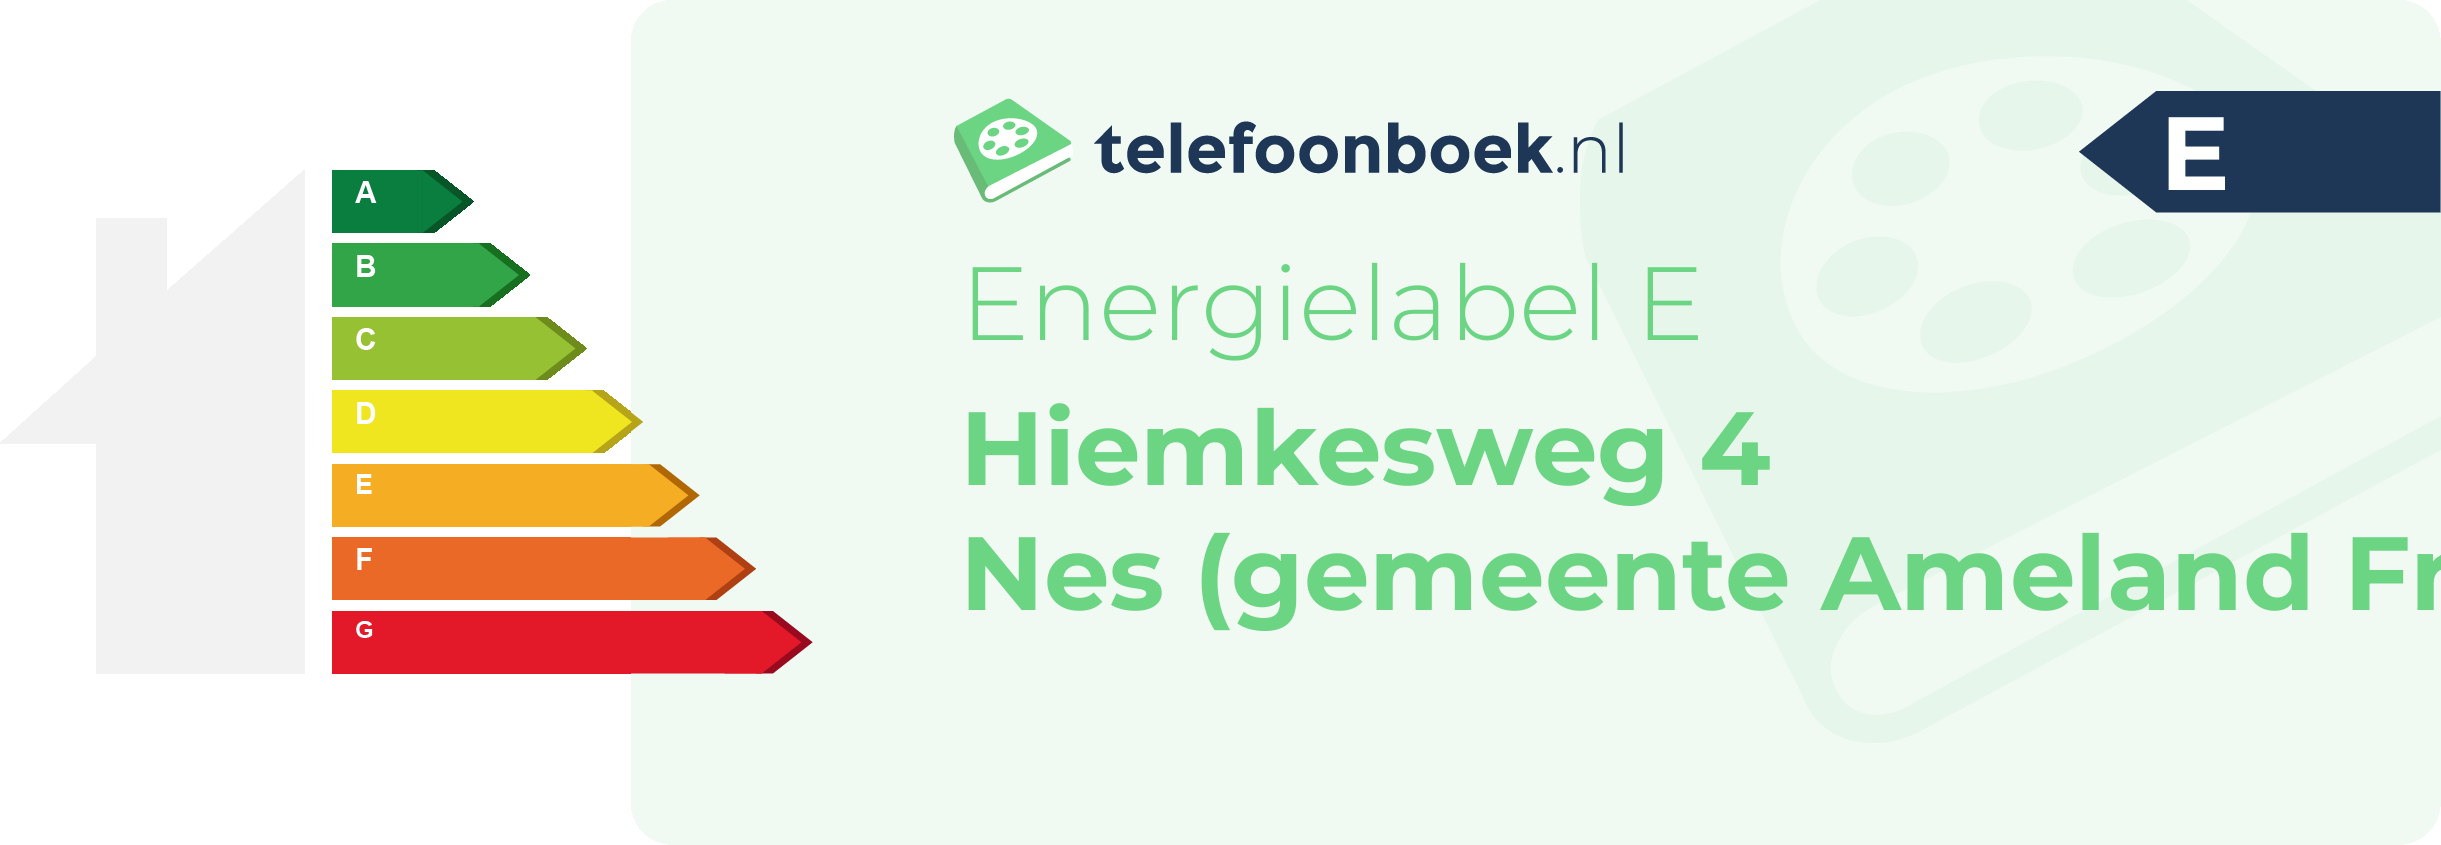 Energielabel Hiemkesweg 4 Nes (gemeente Ameland Friesland)